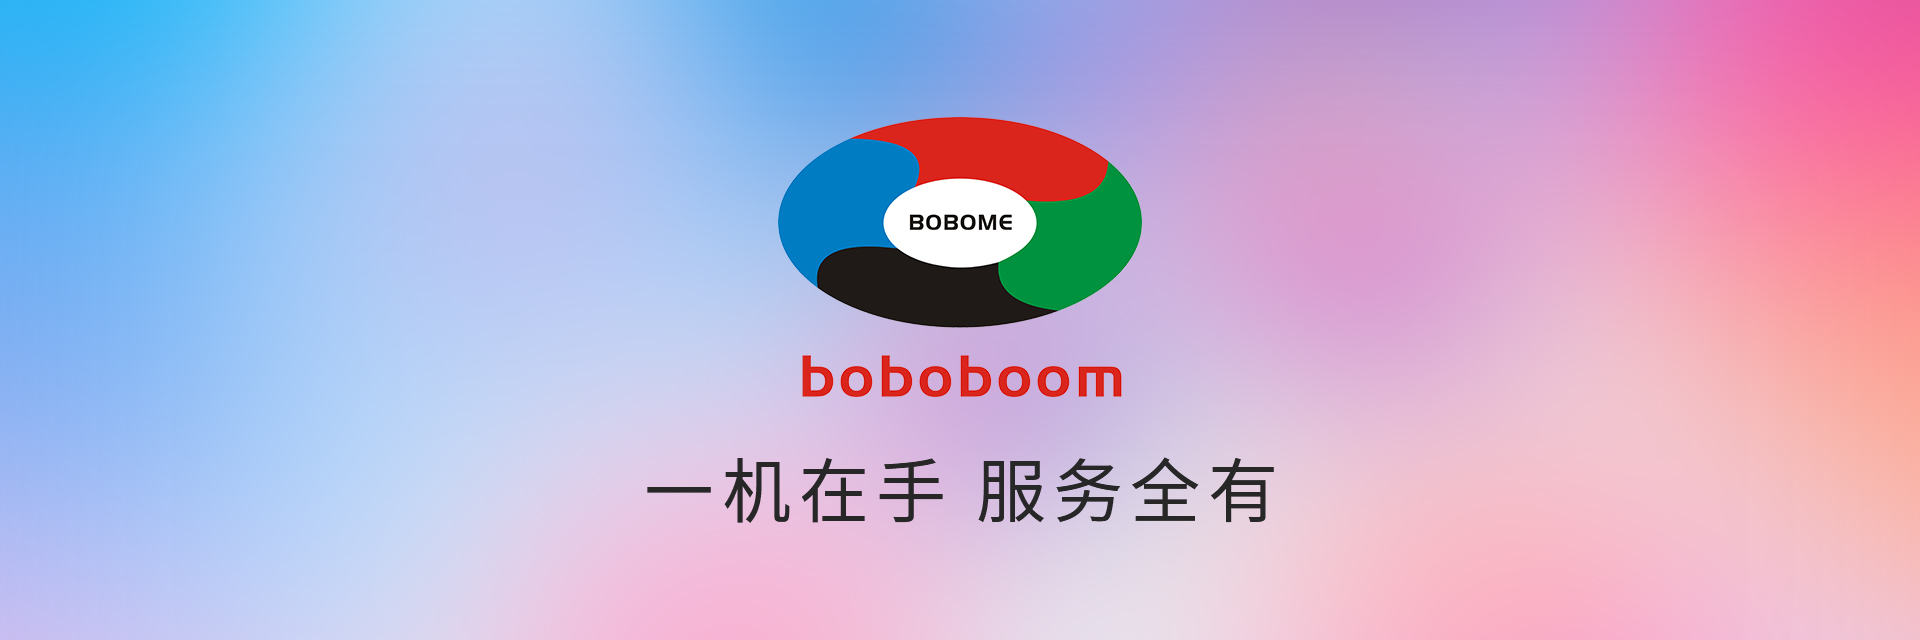 boboboom · 一站式多元化综合服务平台